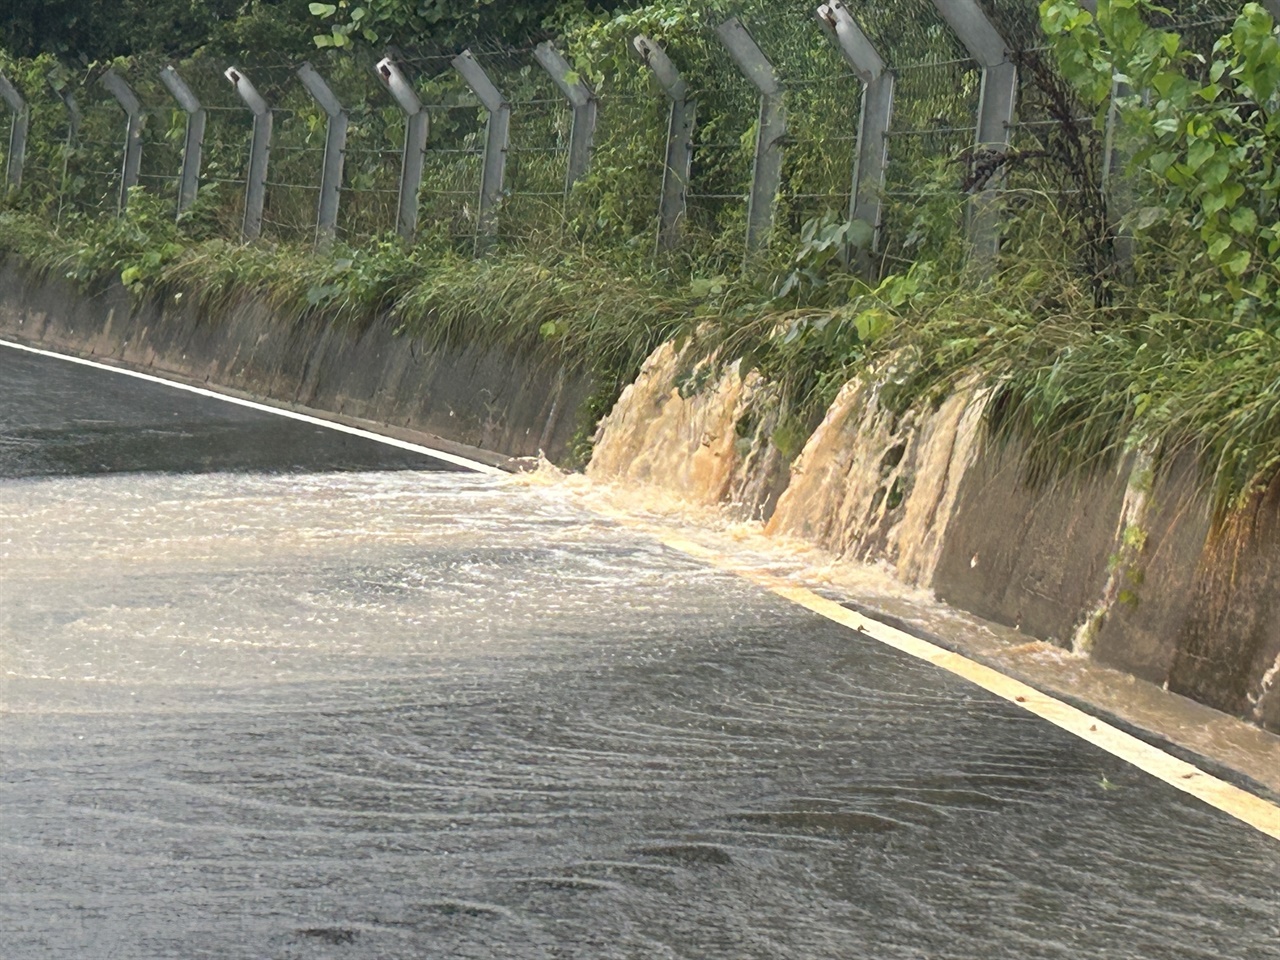 청양읍 고운식물원으로 향하는 도로에도 인근 산에서 내려오는 토사와 빗물로 통행에 어려움을 겪고 있다.